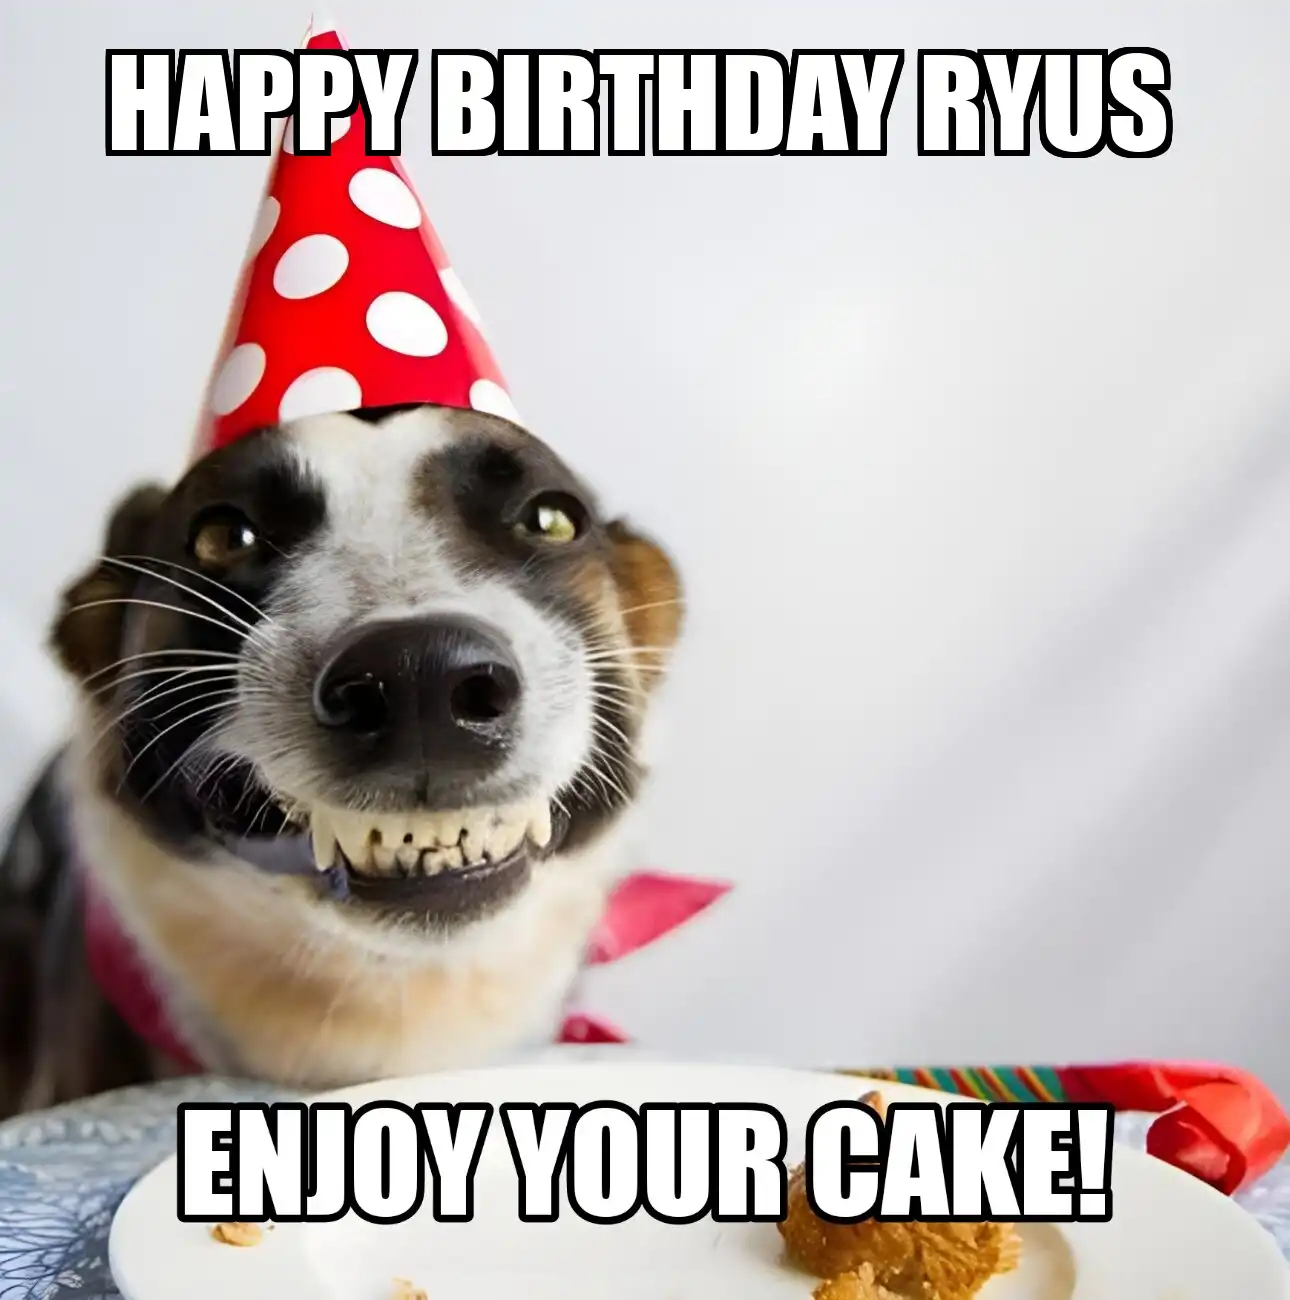 Happy Birthday Ryus Enjoy Your Cake Dog Meme